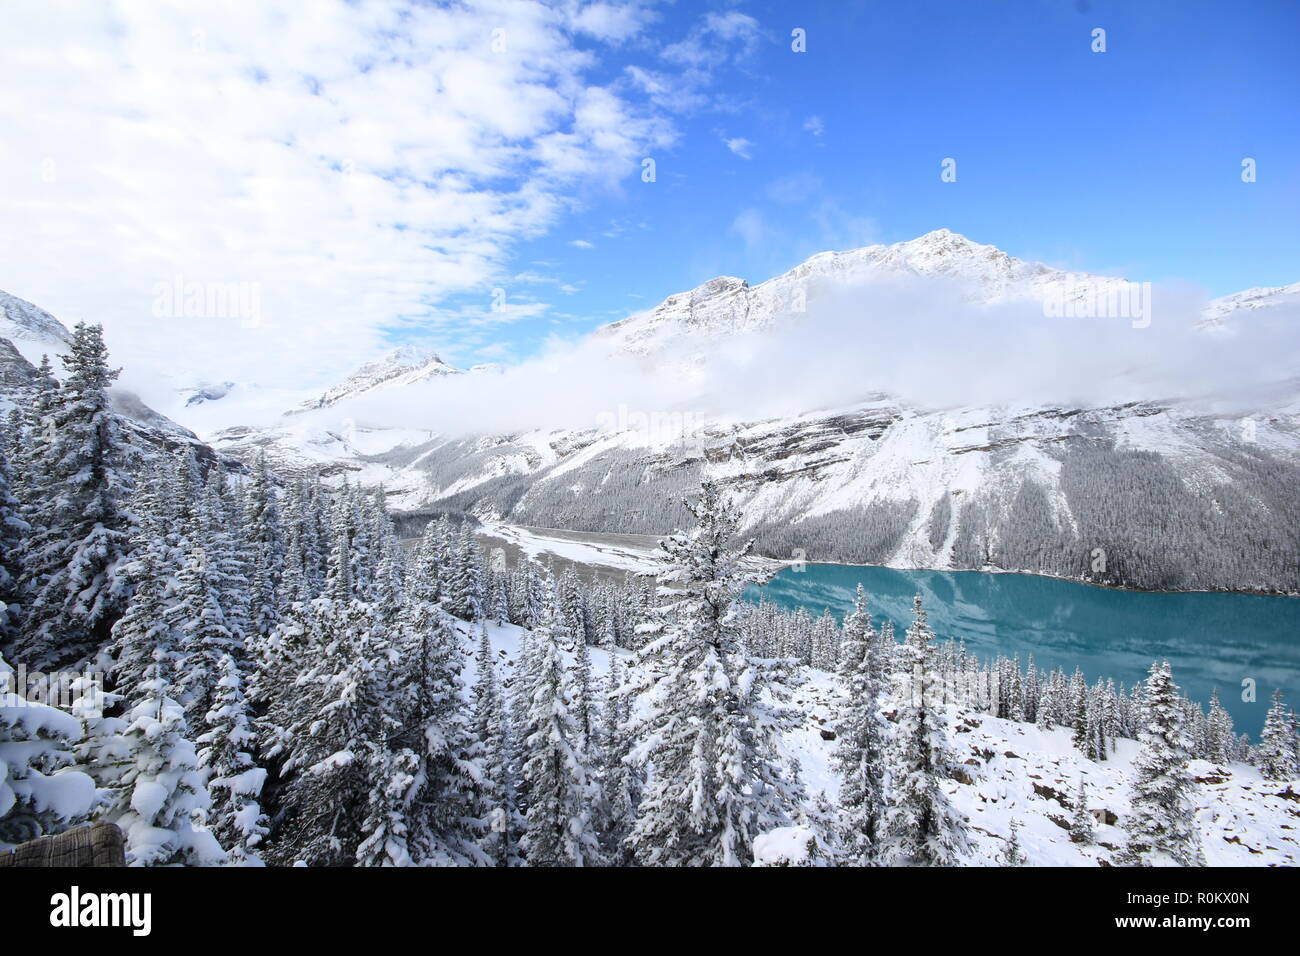 Spettacolare scena invernale presso il Lago Peyto nel Parco Nazionale di Banff, Canada, con le montagne e gli alberi coperti di neve. Immagine del tour popolare attrazione. Foto Stock